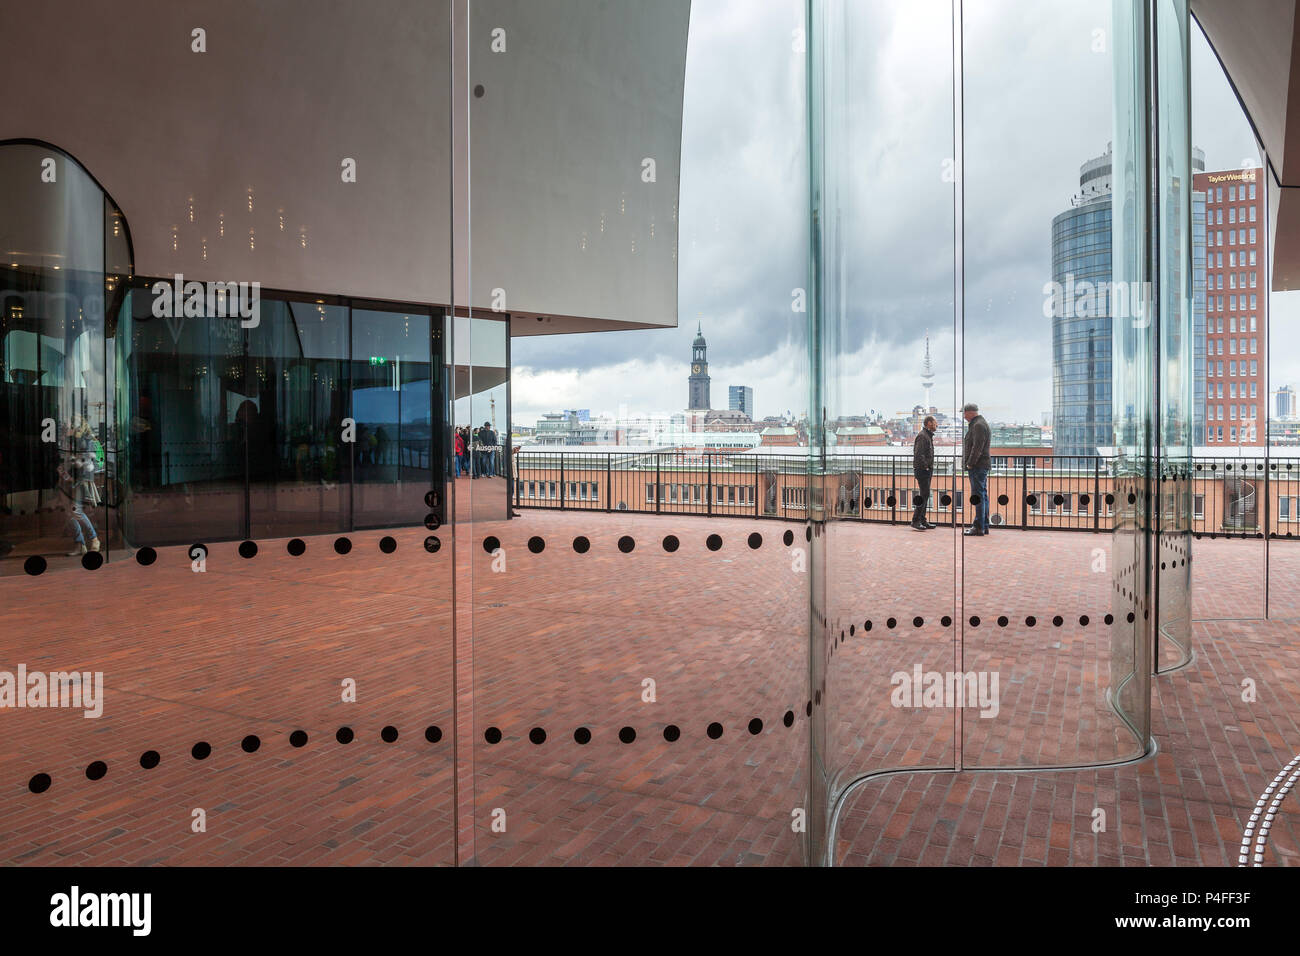 Hamburgo, Alemania, en la Elbphilharmonie de Hamburgo HafenCity harbor Foto de stock